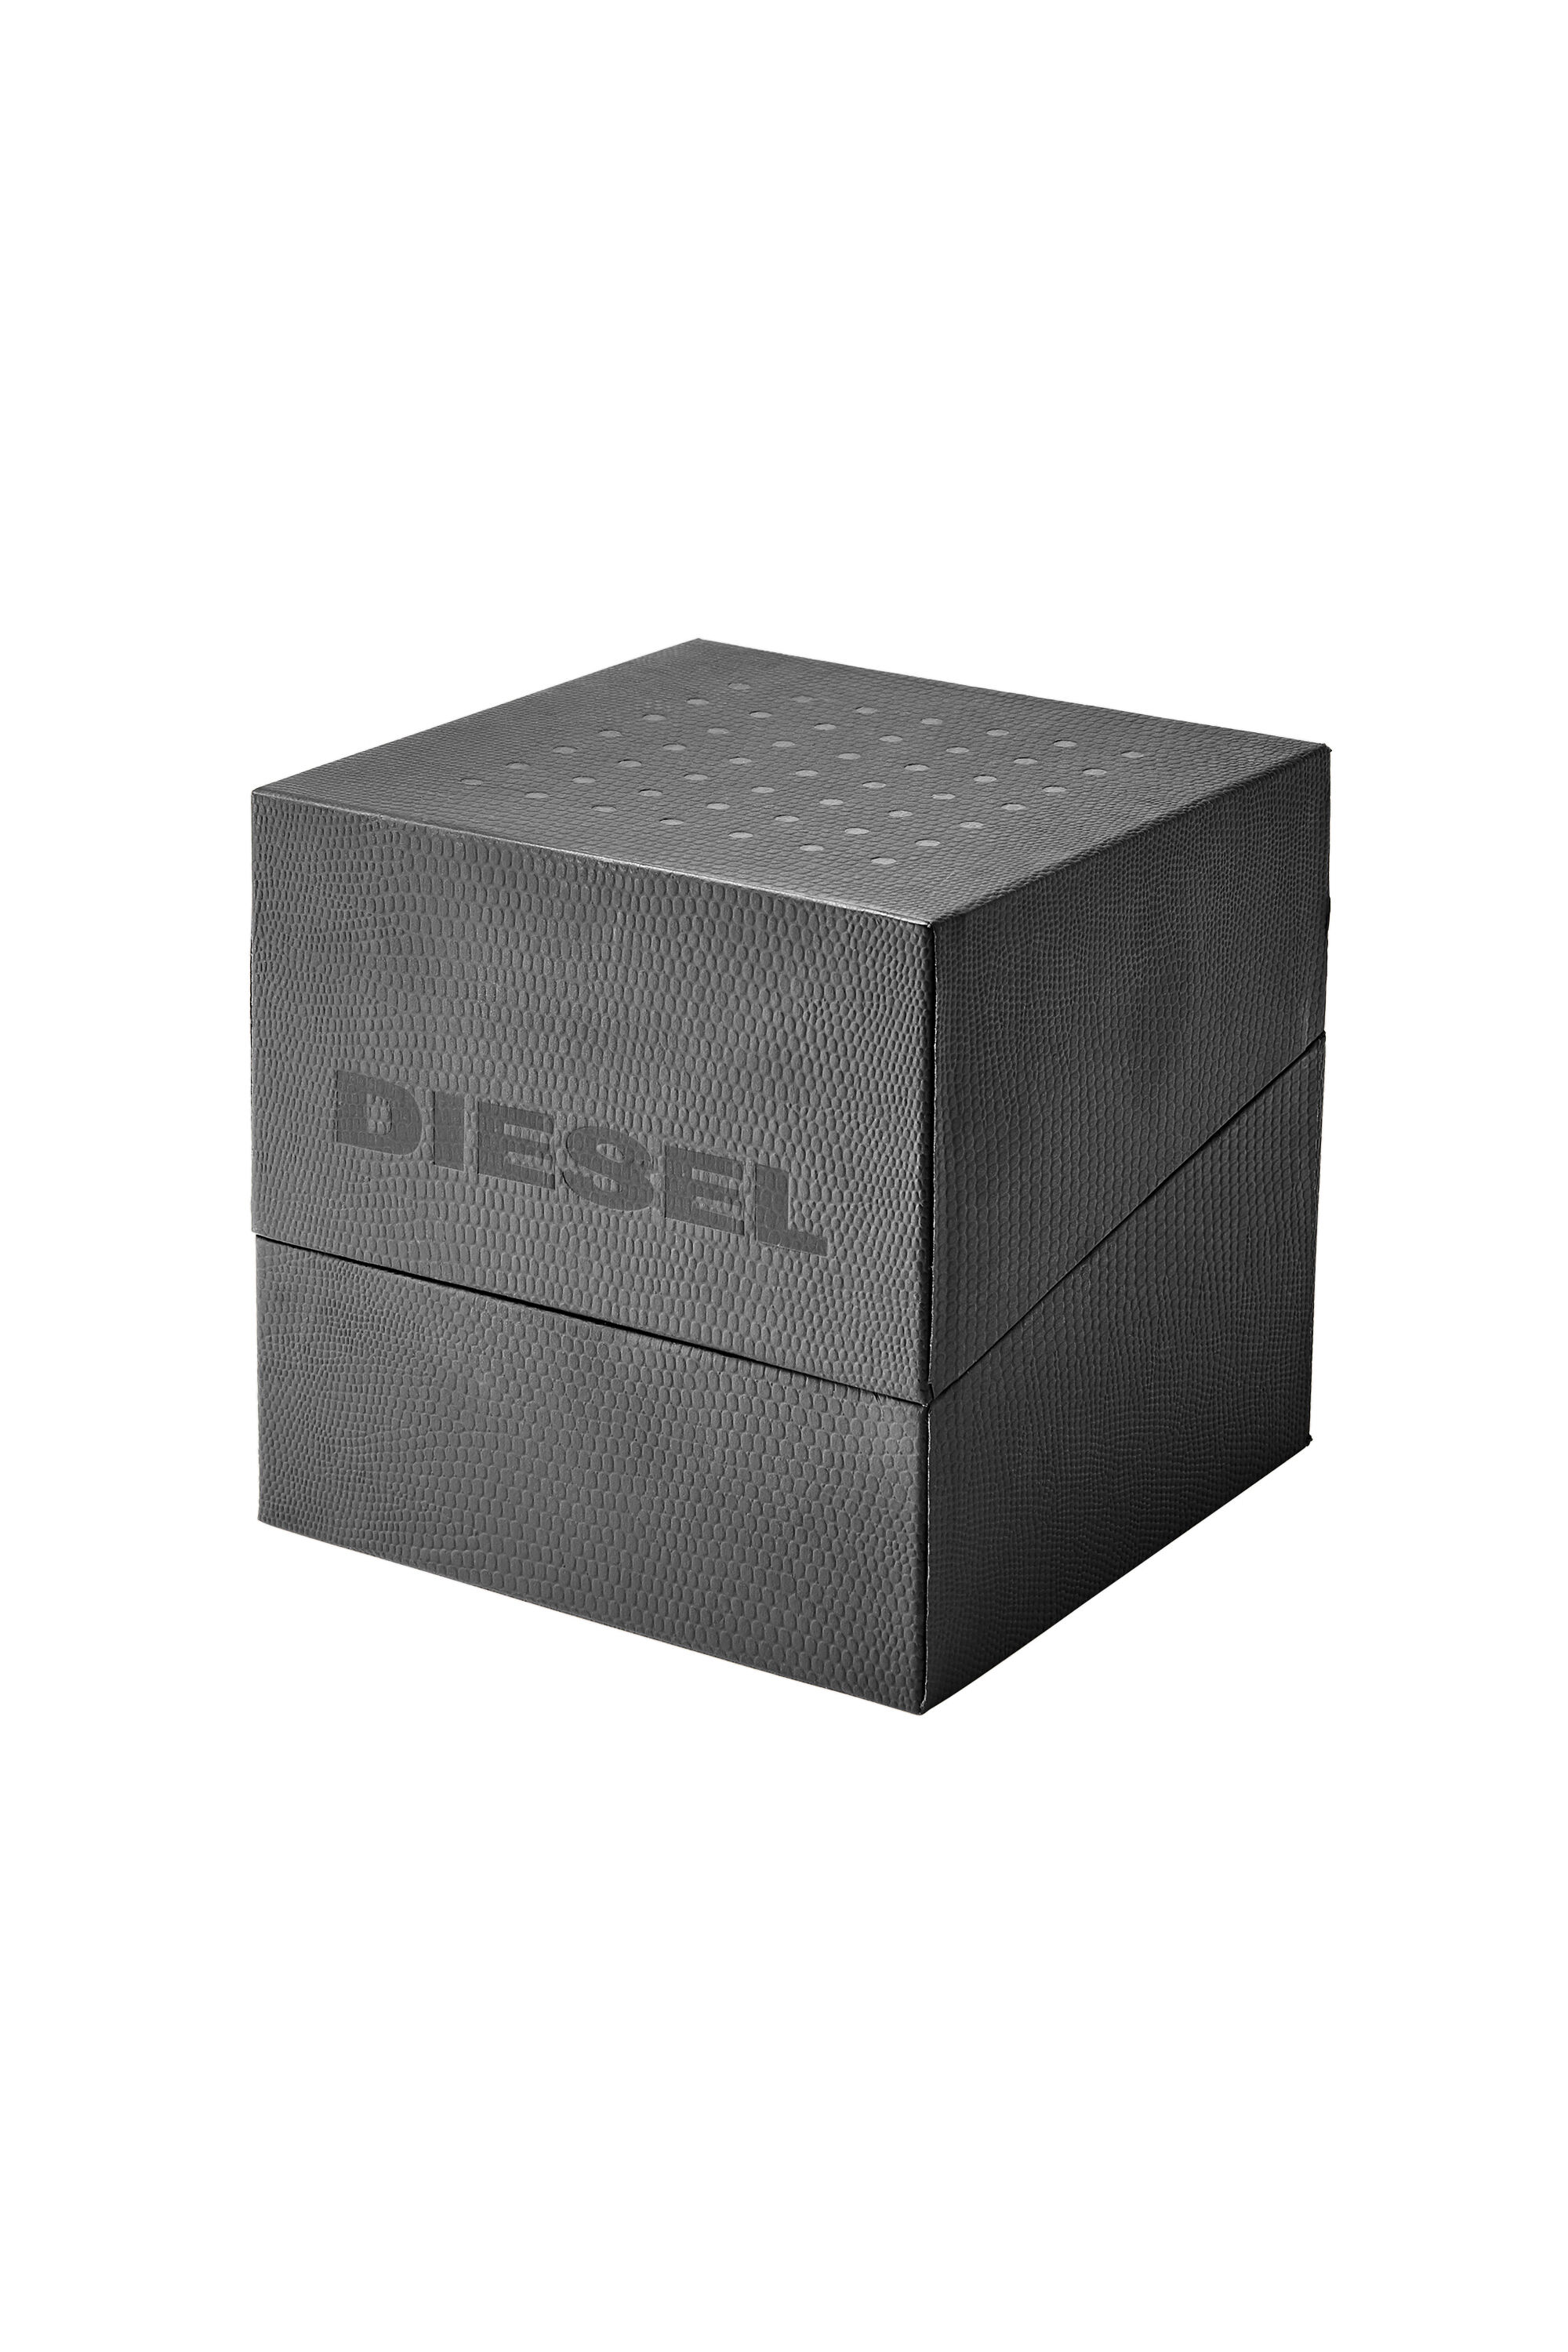 Diesel - DZ1908, Gris oscuro - Image 4